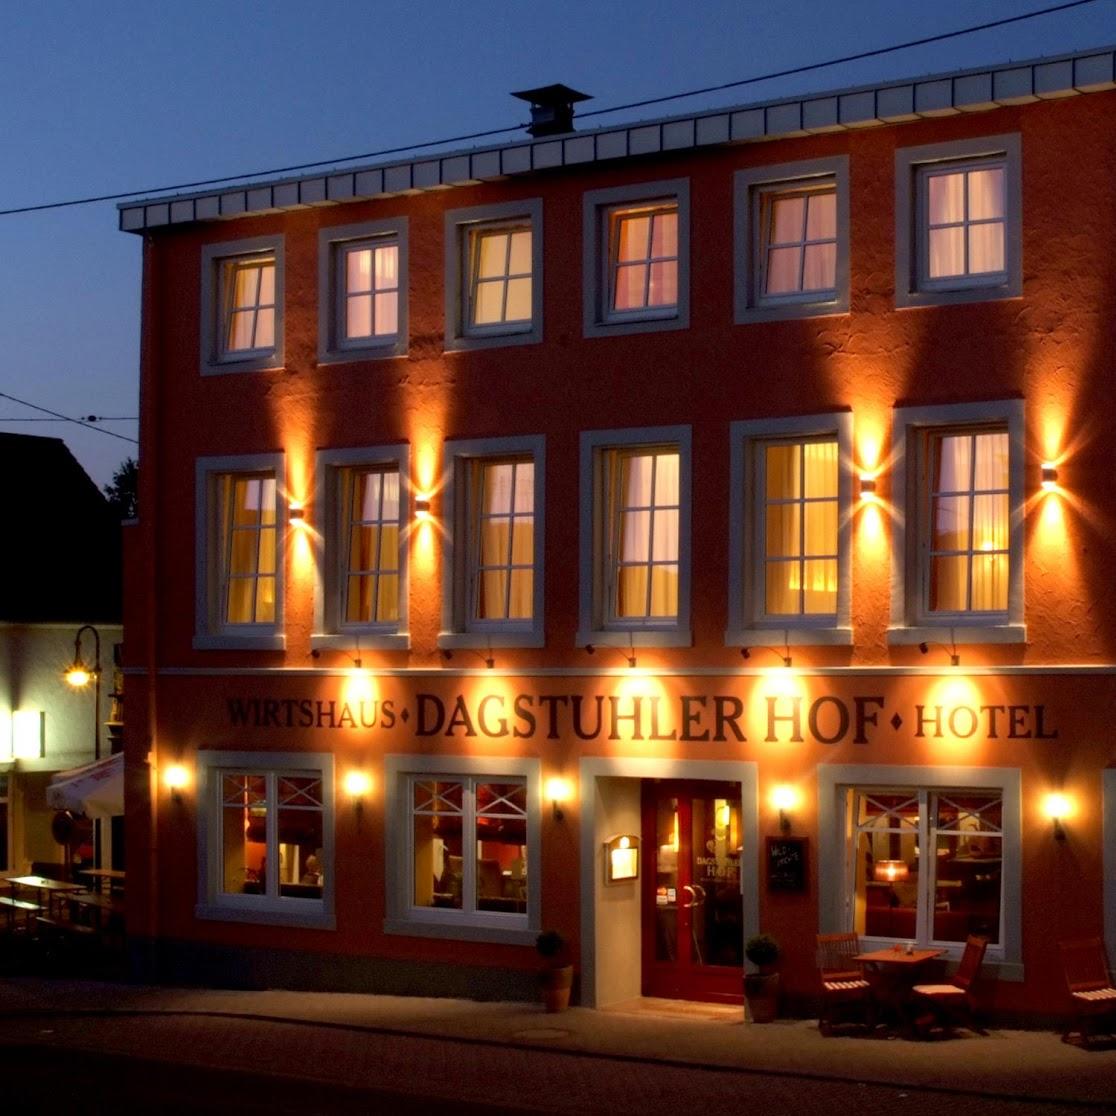 Restaurant "Hotel Dagstuhler Hof" in  Wadern